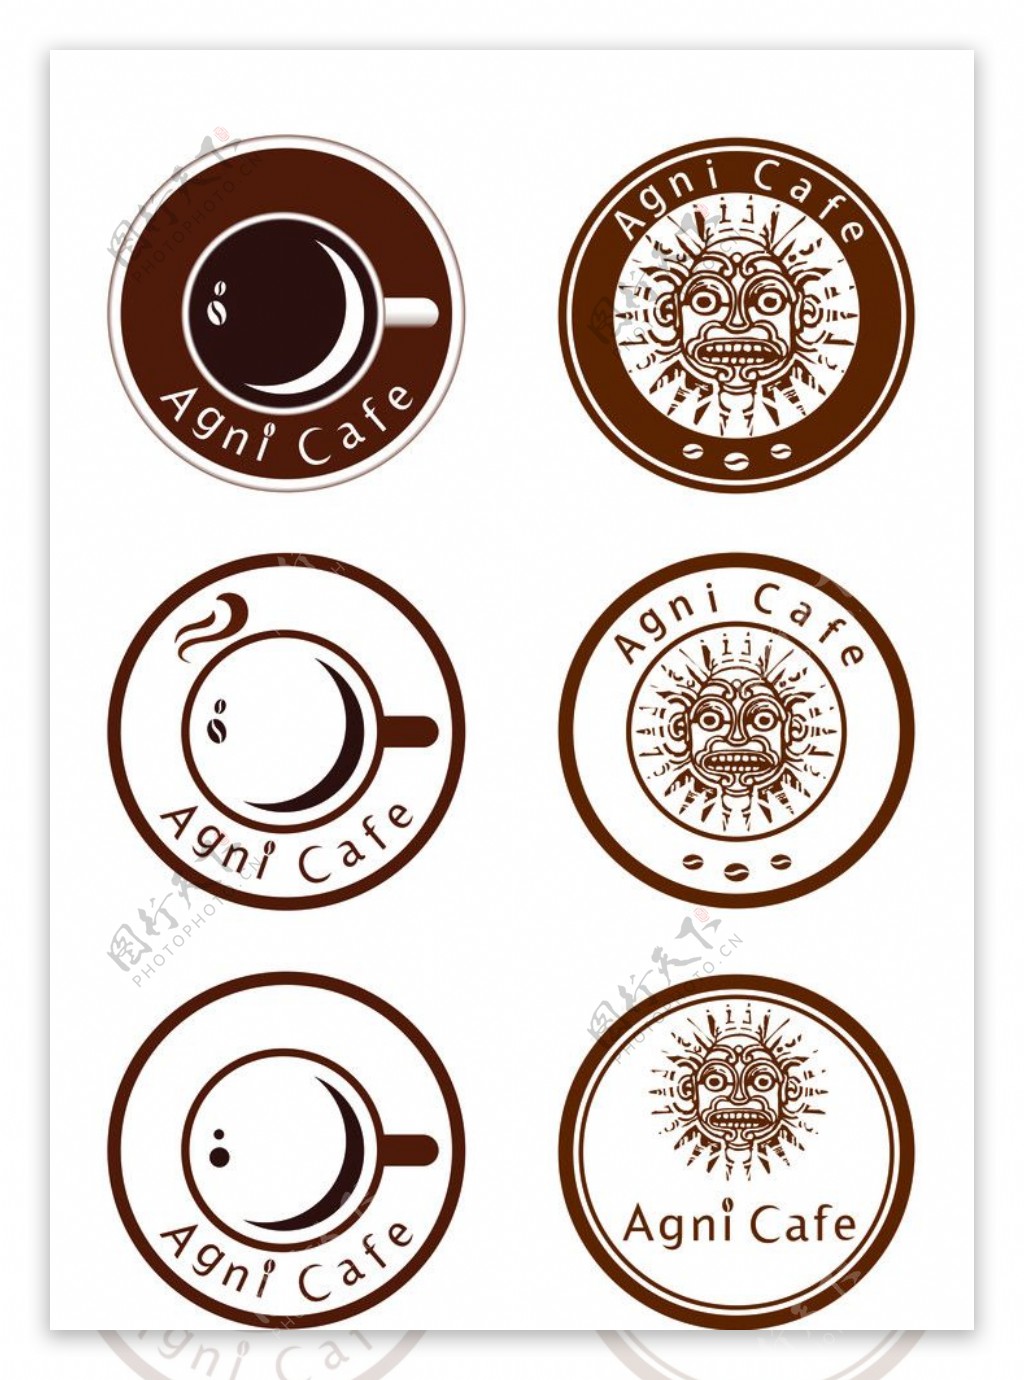 高档西餐咖啡厅logo设计图片